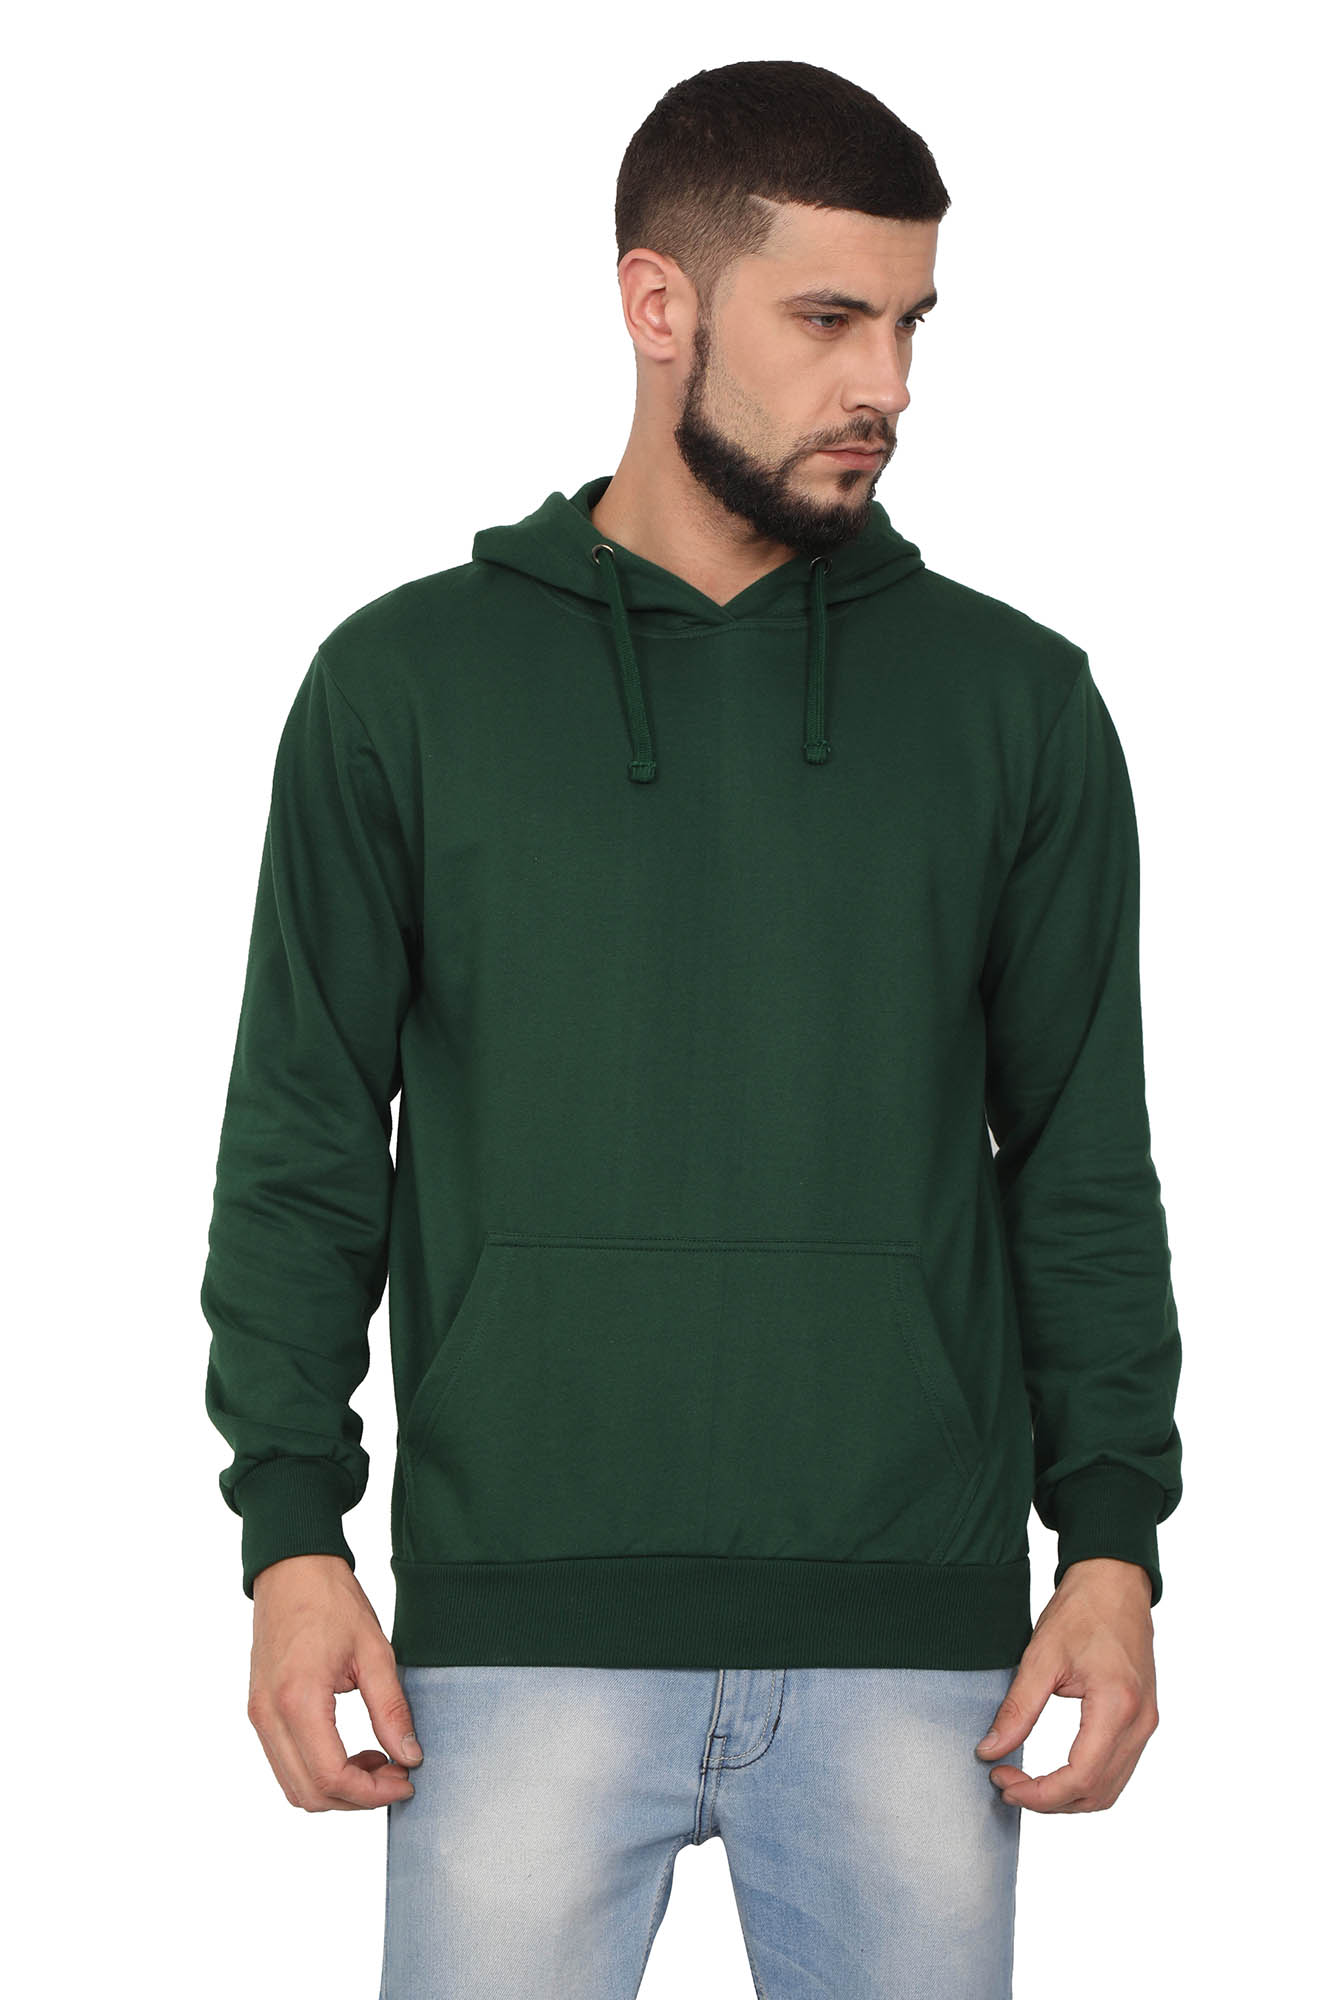 Men's Green Hoodie Sweatshirt